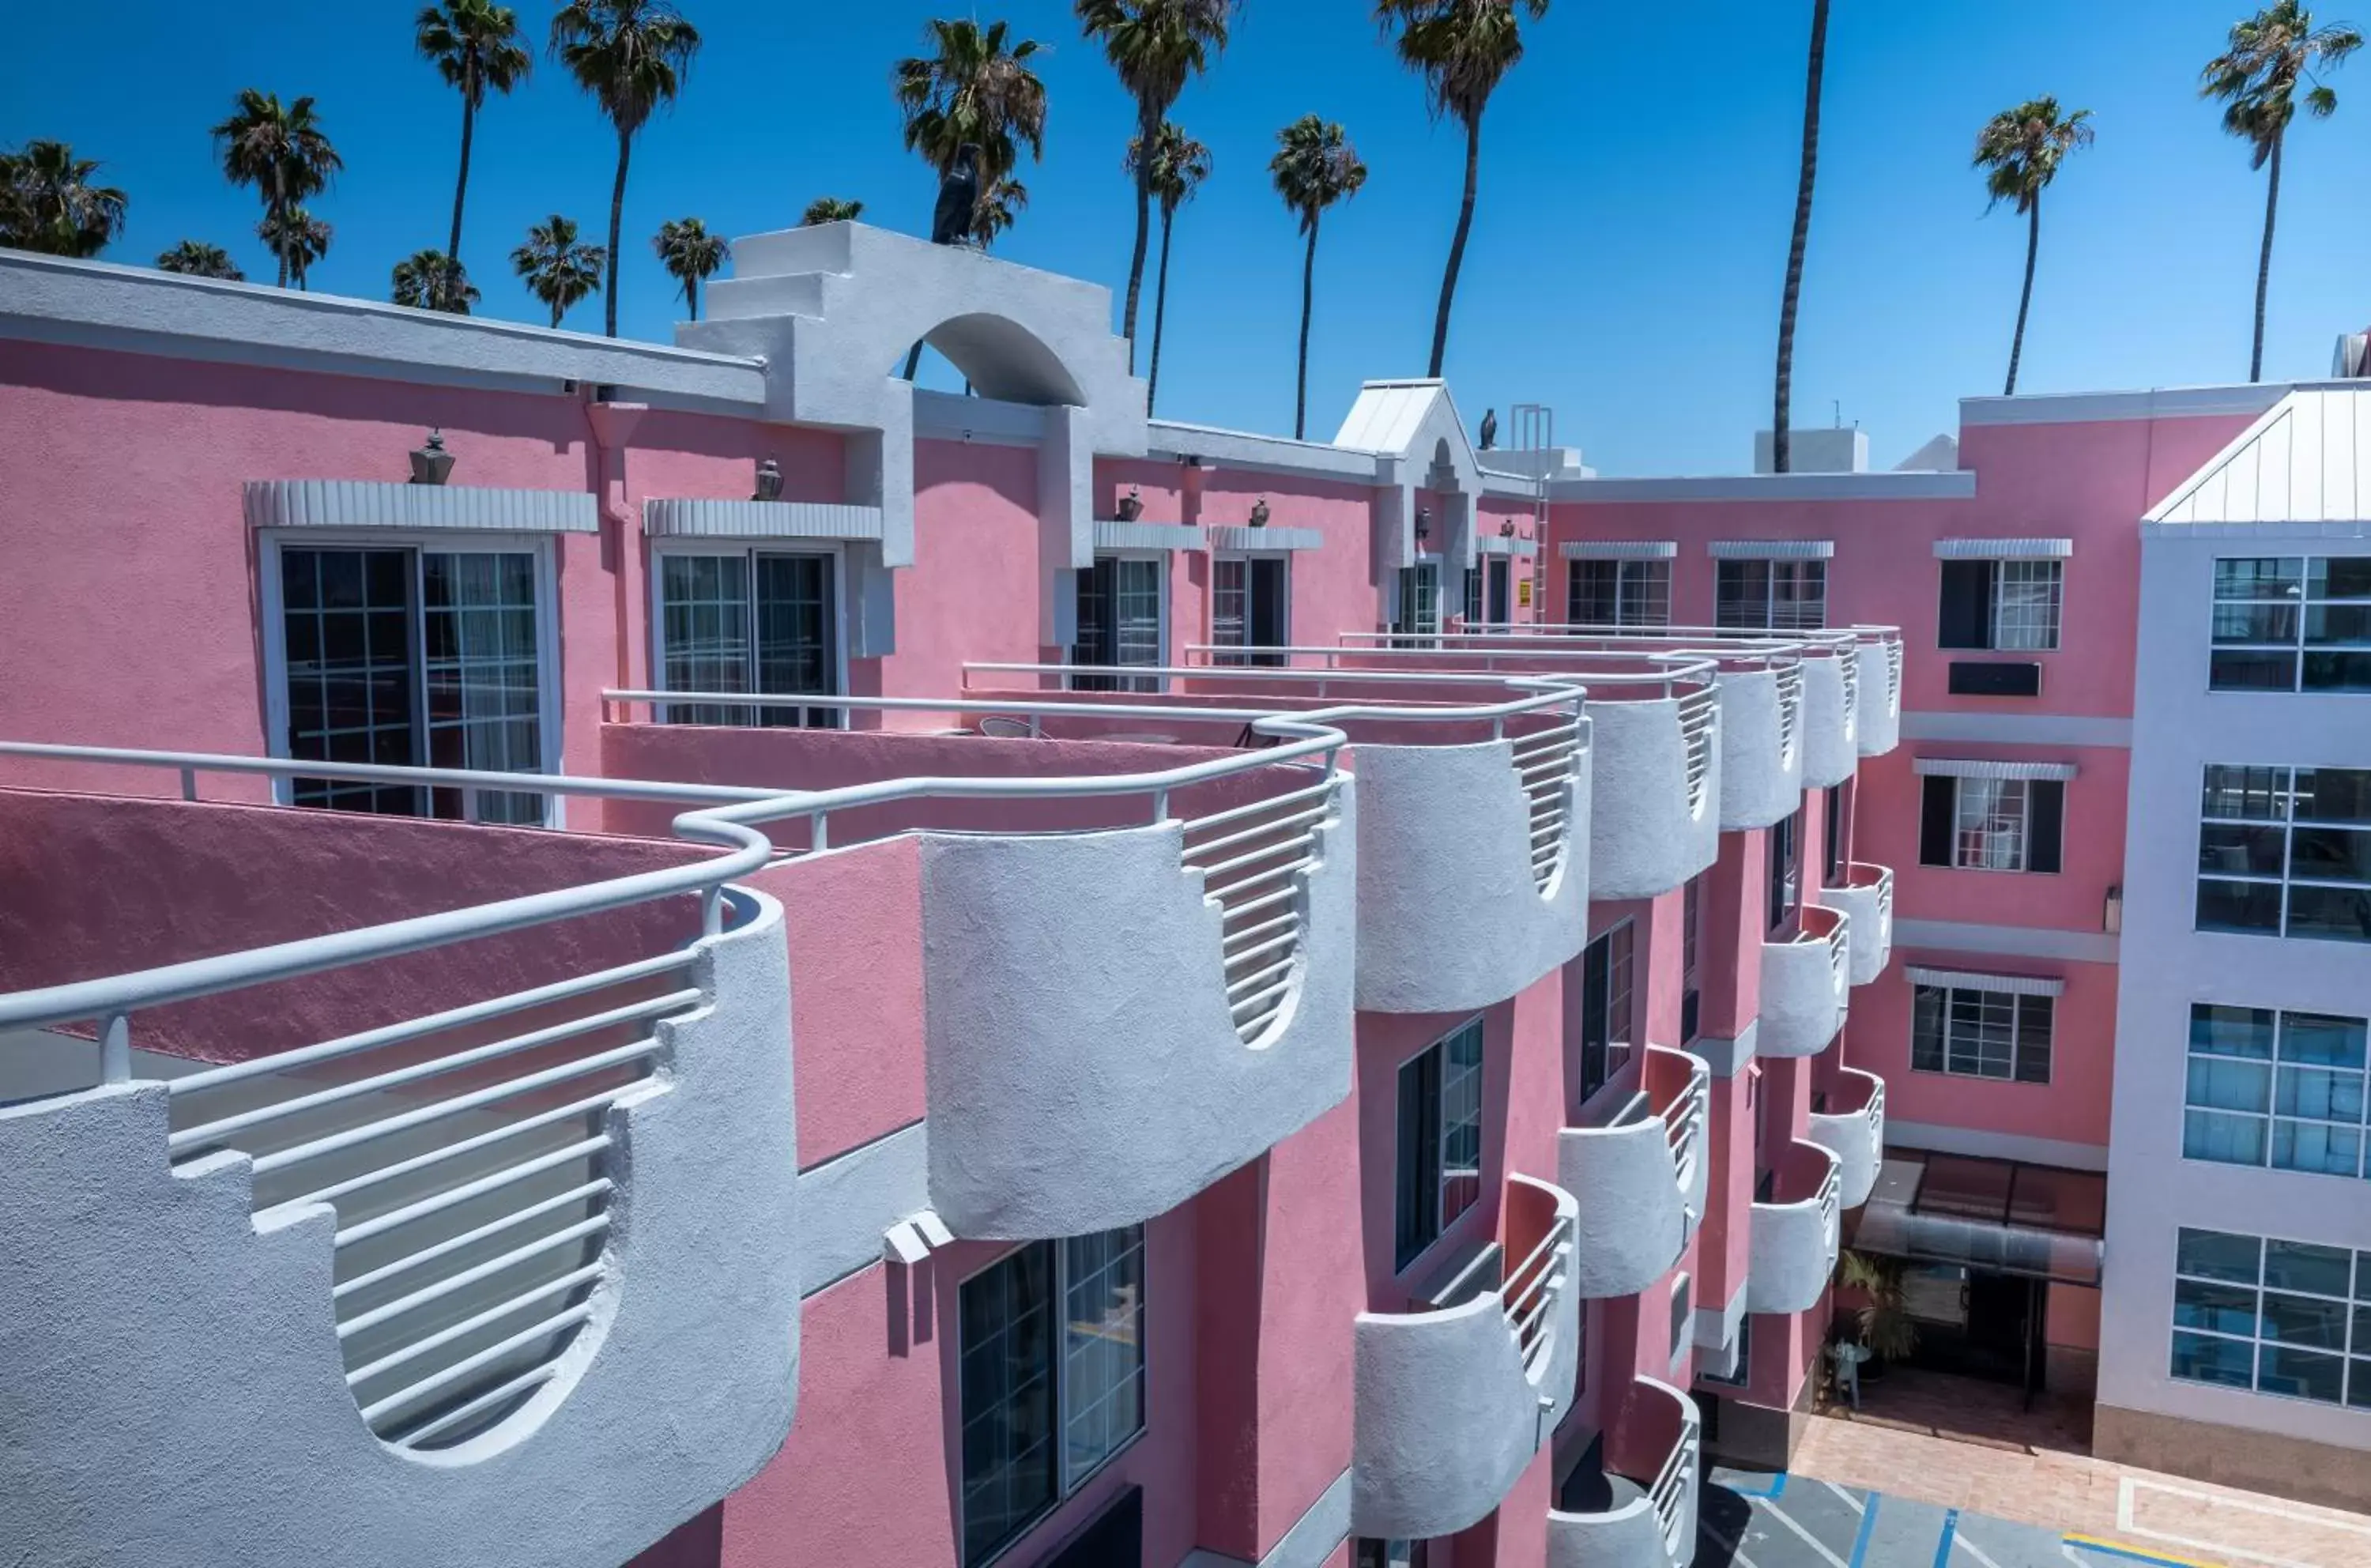 Property Building in Days Inn by Wyndham Santa Monica/Los Angeles